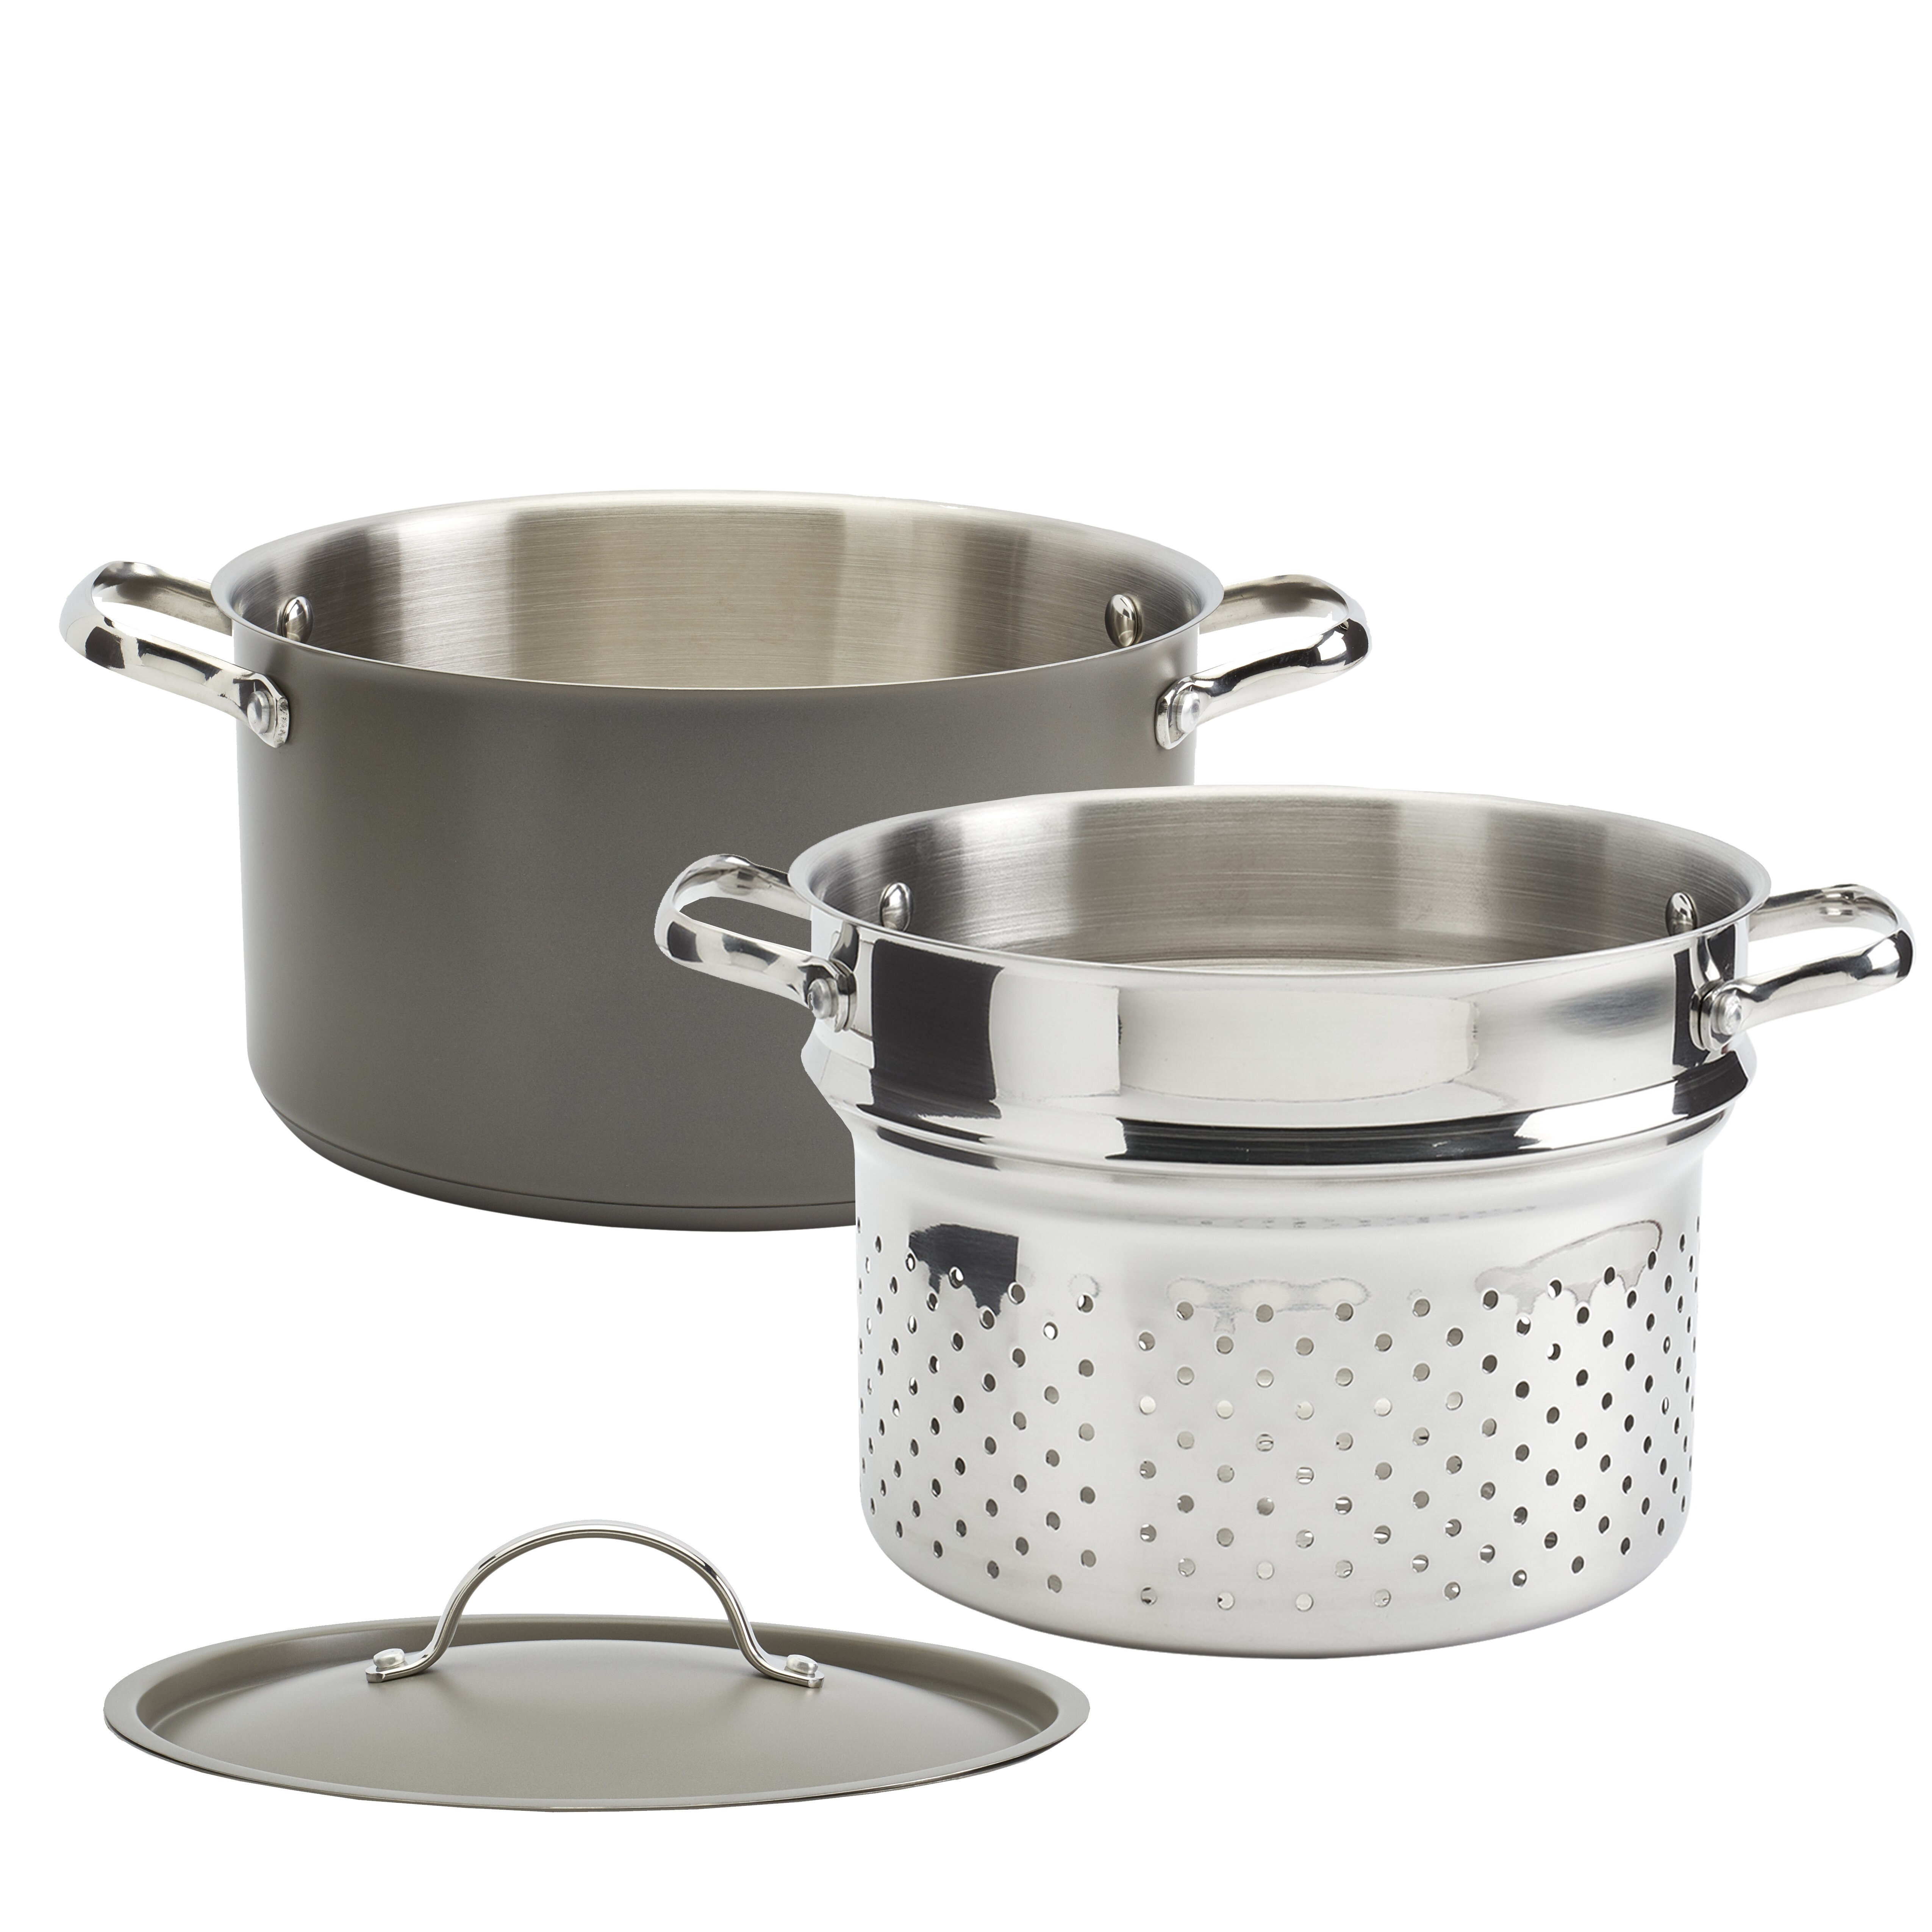 https://assets.wfcdn.com/im/14863953/compr-r85/1438/143851388/denmark-denmark-cookware-6-quarts-stainless-steel-steamer-pot.jpg